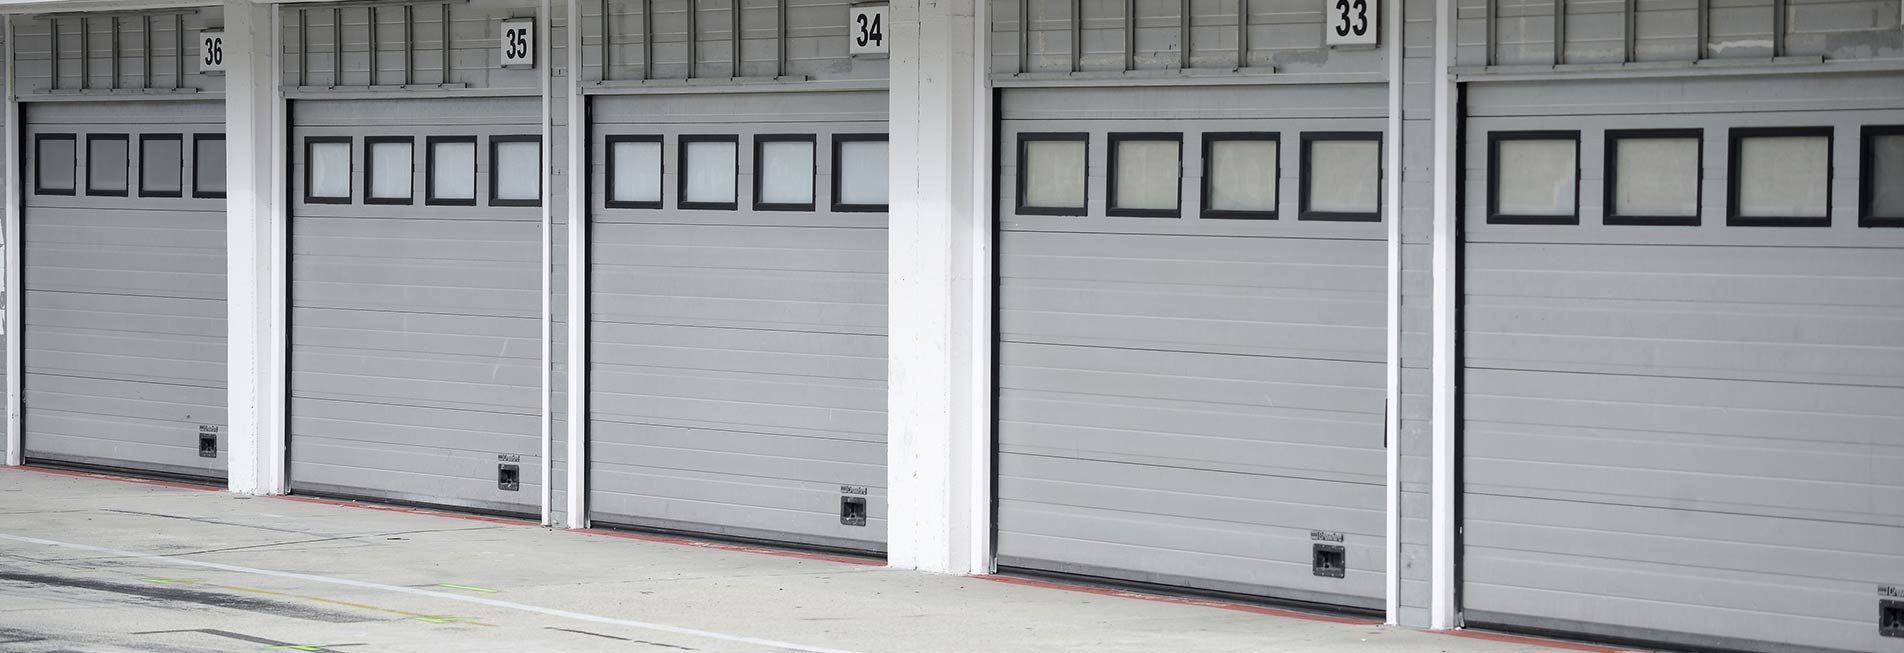 Emergency Garage Door Repair